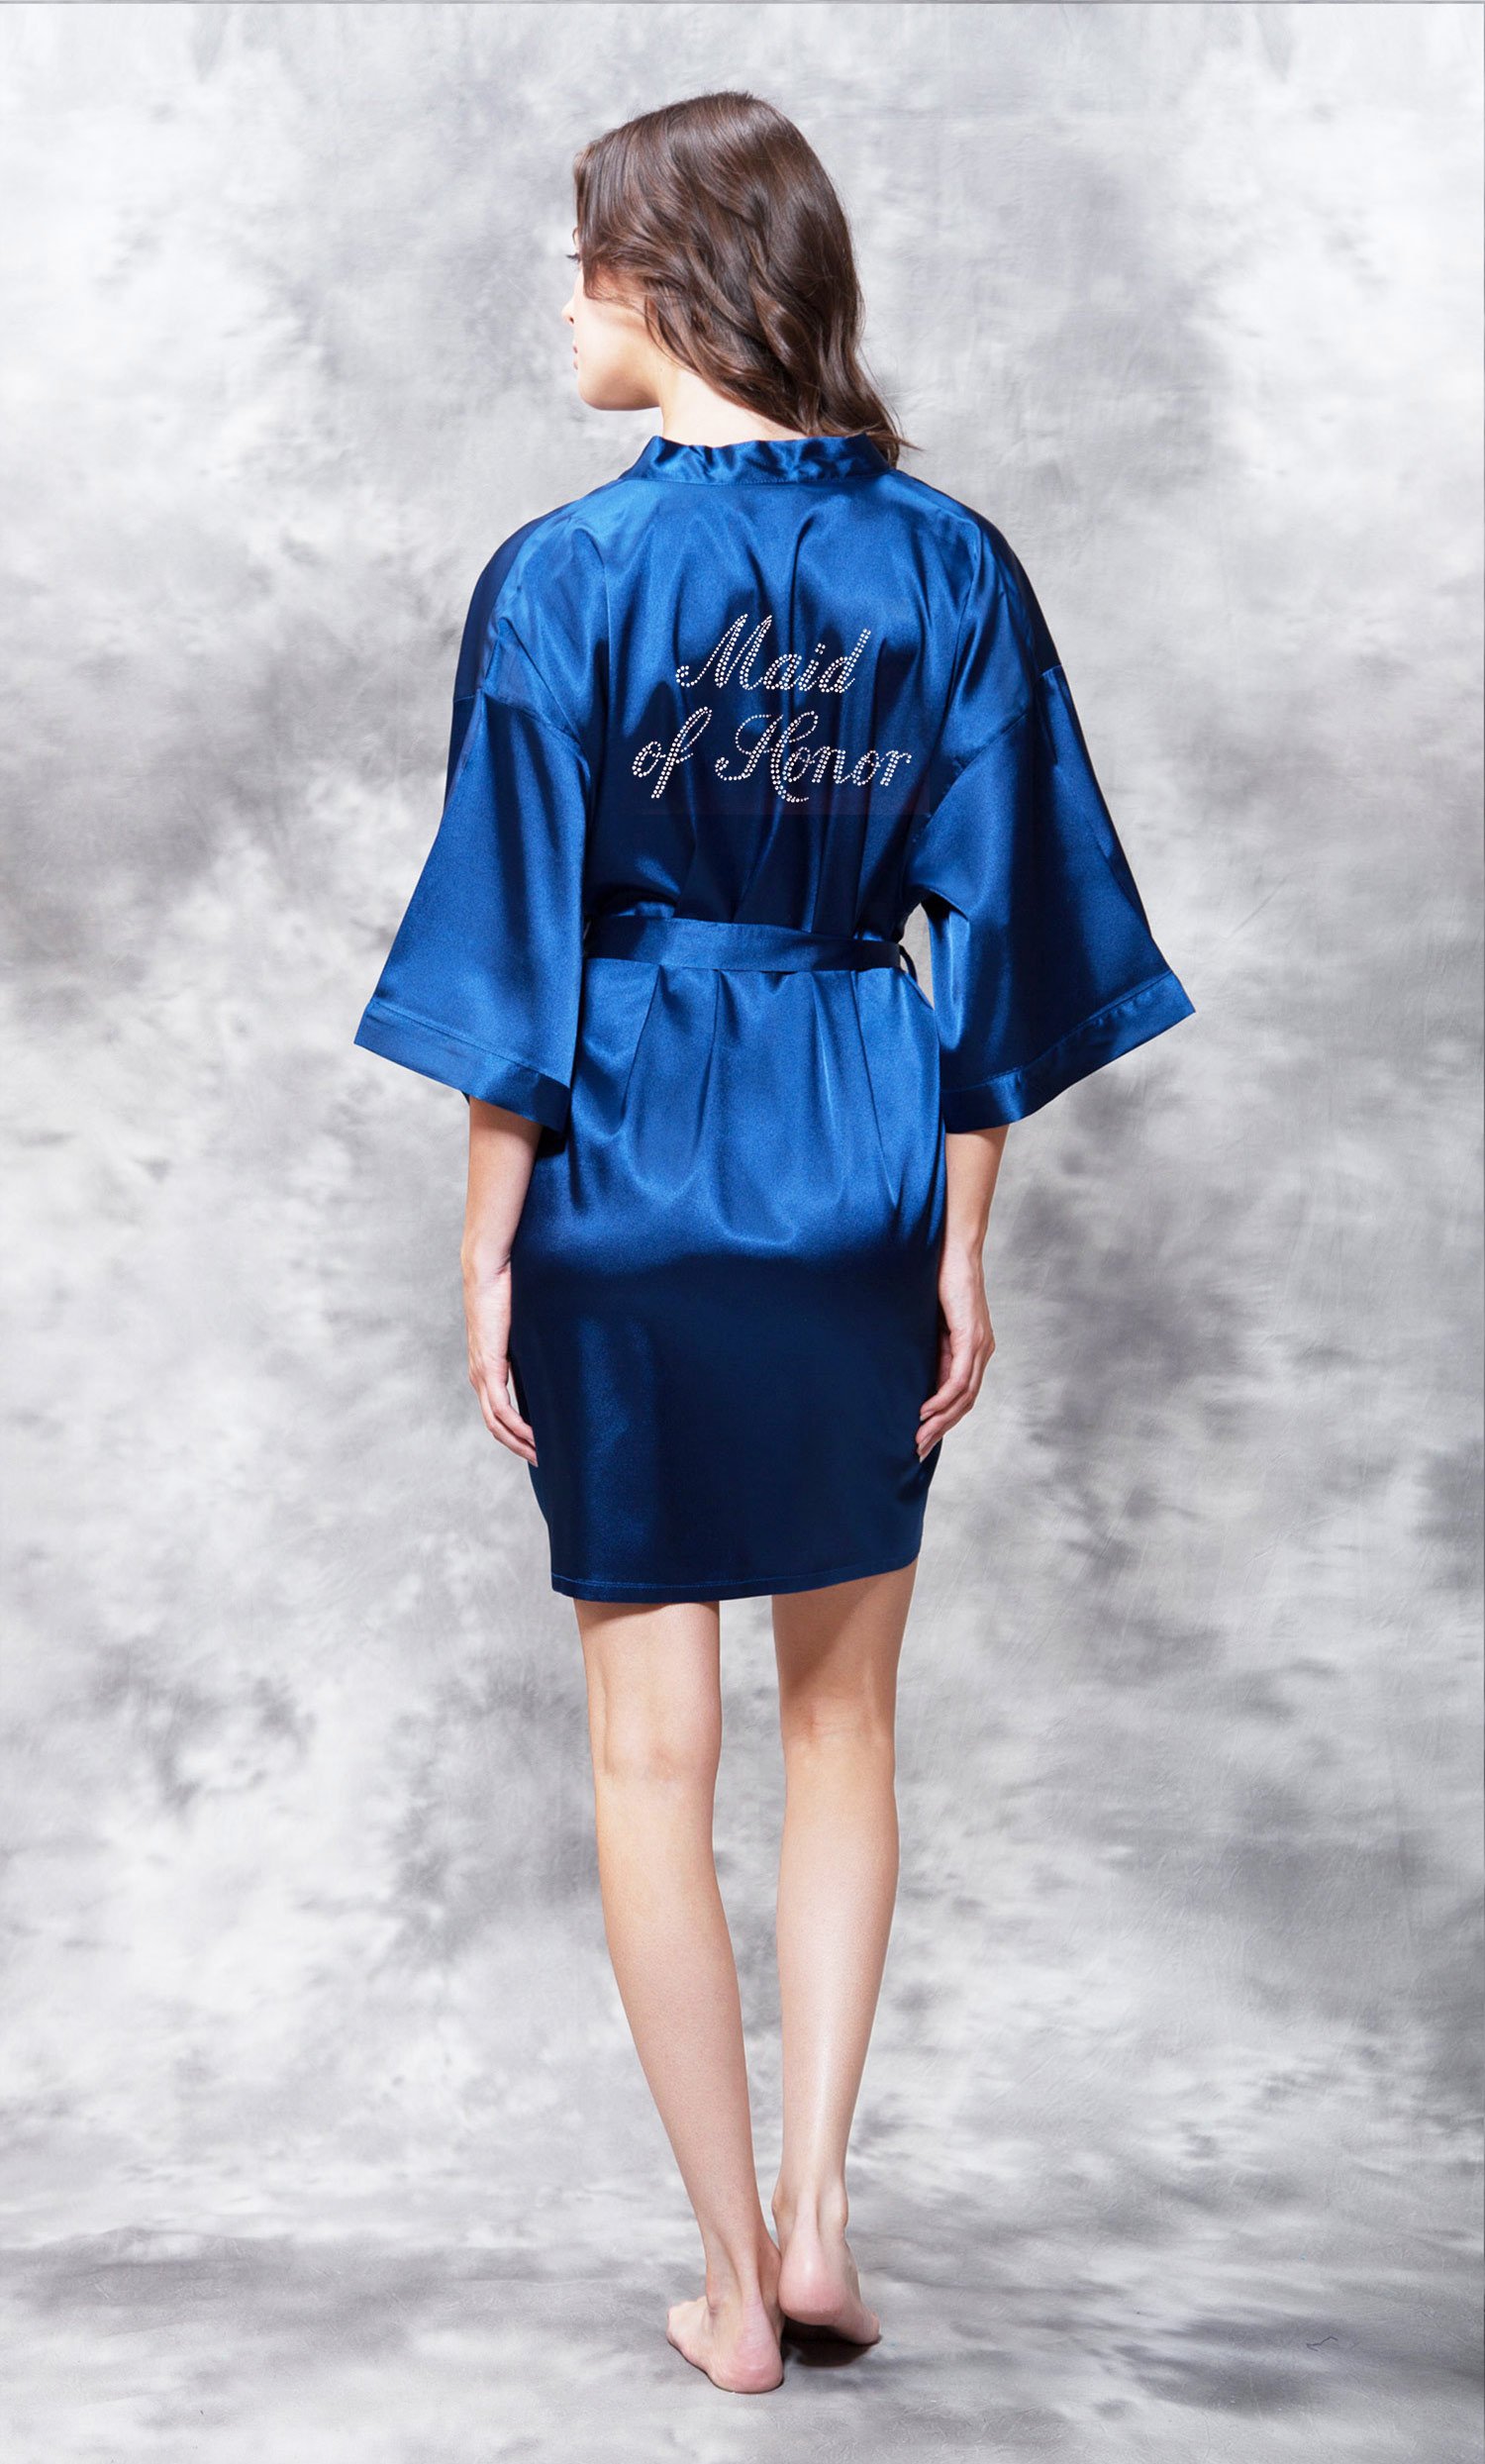 Maid of Honor Clear Rhinestone Satin Kimono Navy Blue Short Robe-Robemart.com